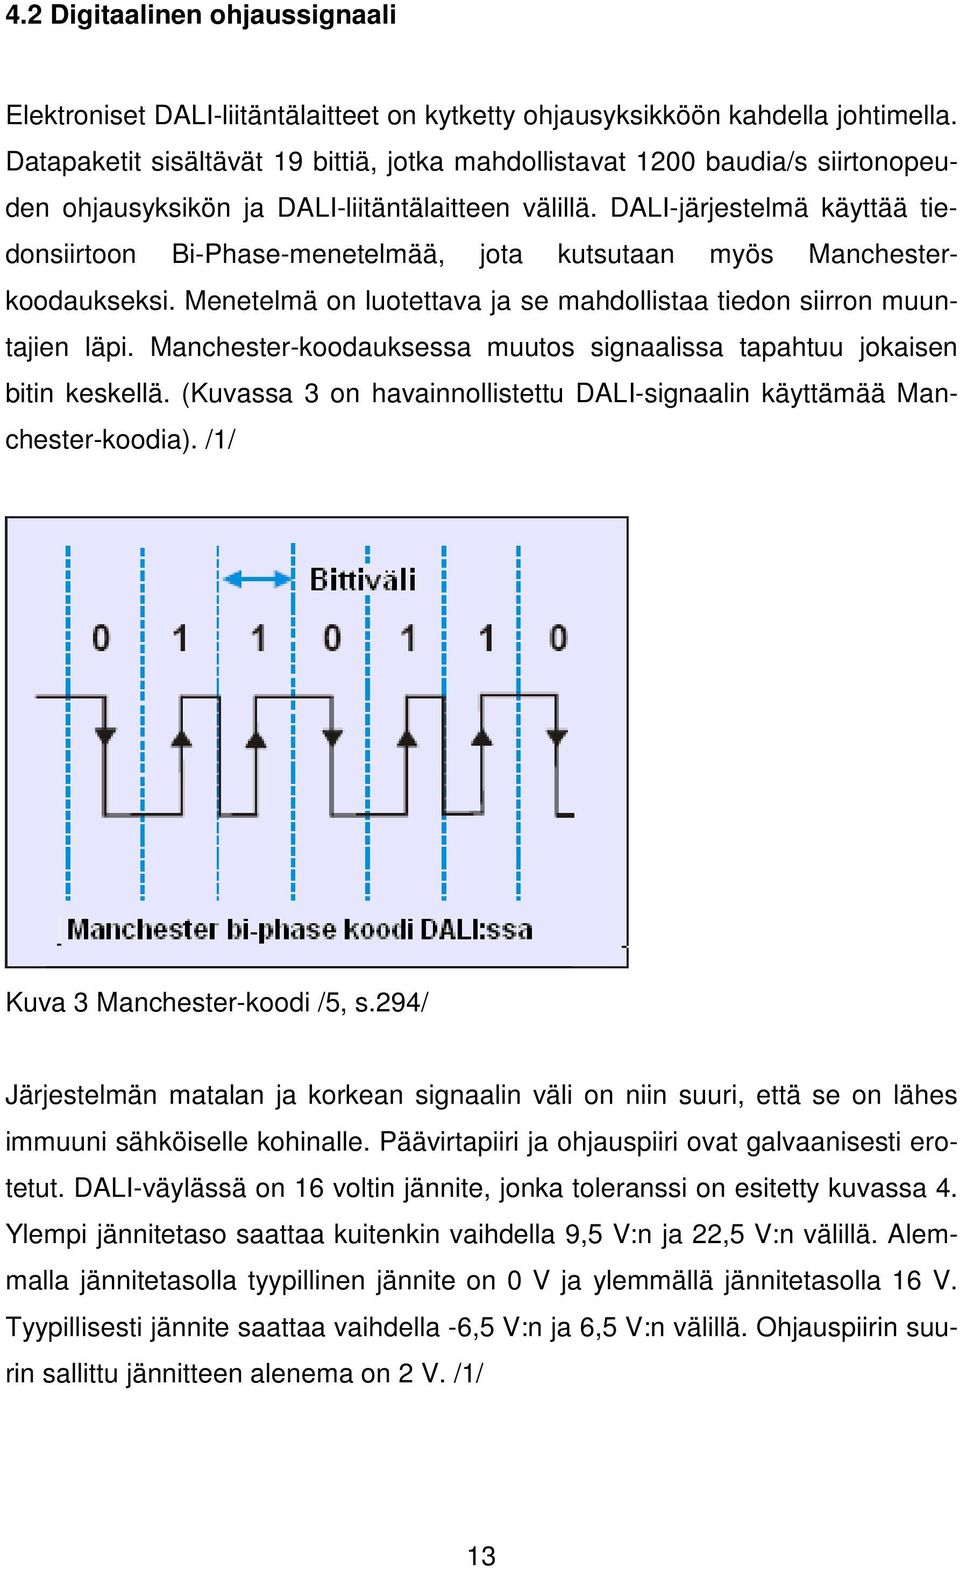 DALI-järjestelmä käyttää tiedonsiirtoon Bi-Phase-menetelmää, jota kutsutaan myös Manchesterkoodaukseksi. Menetelmä on luotettava ja se mahdollistaa tiedon siirron muuntajien läpi.